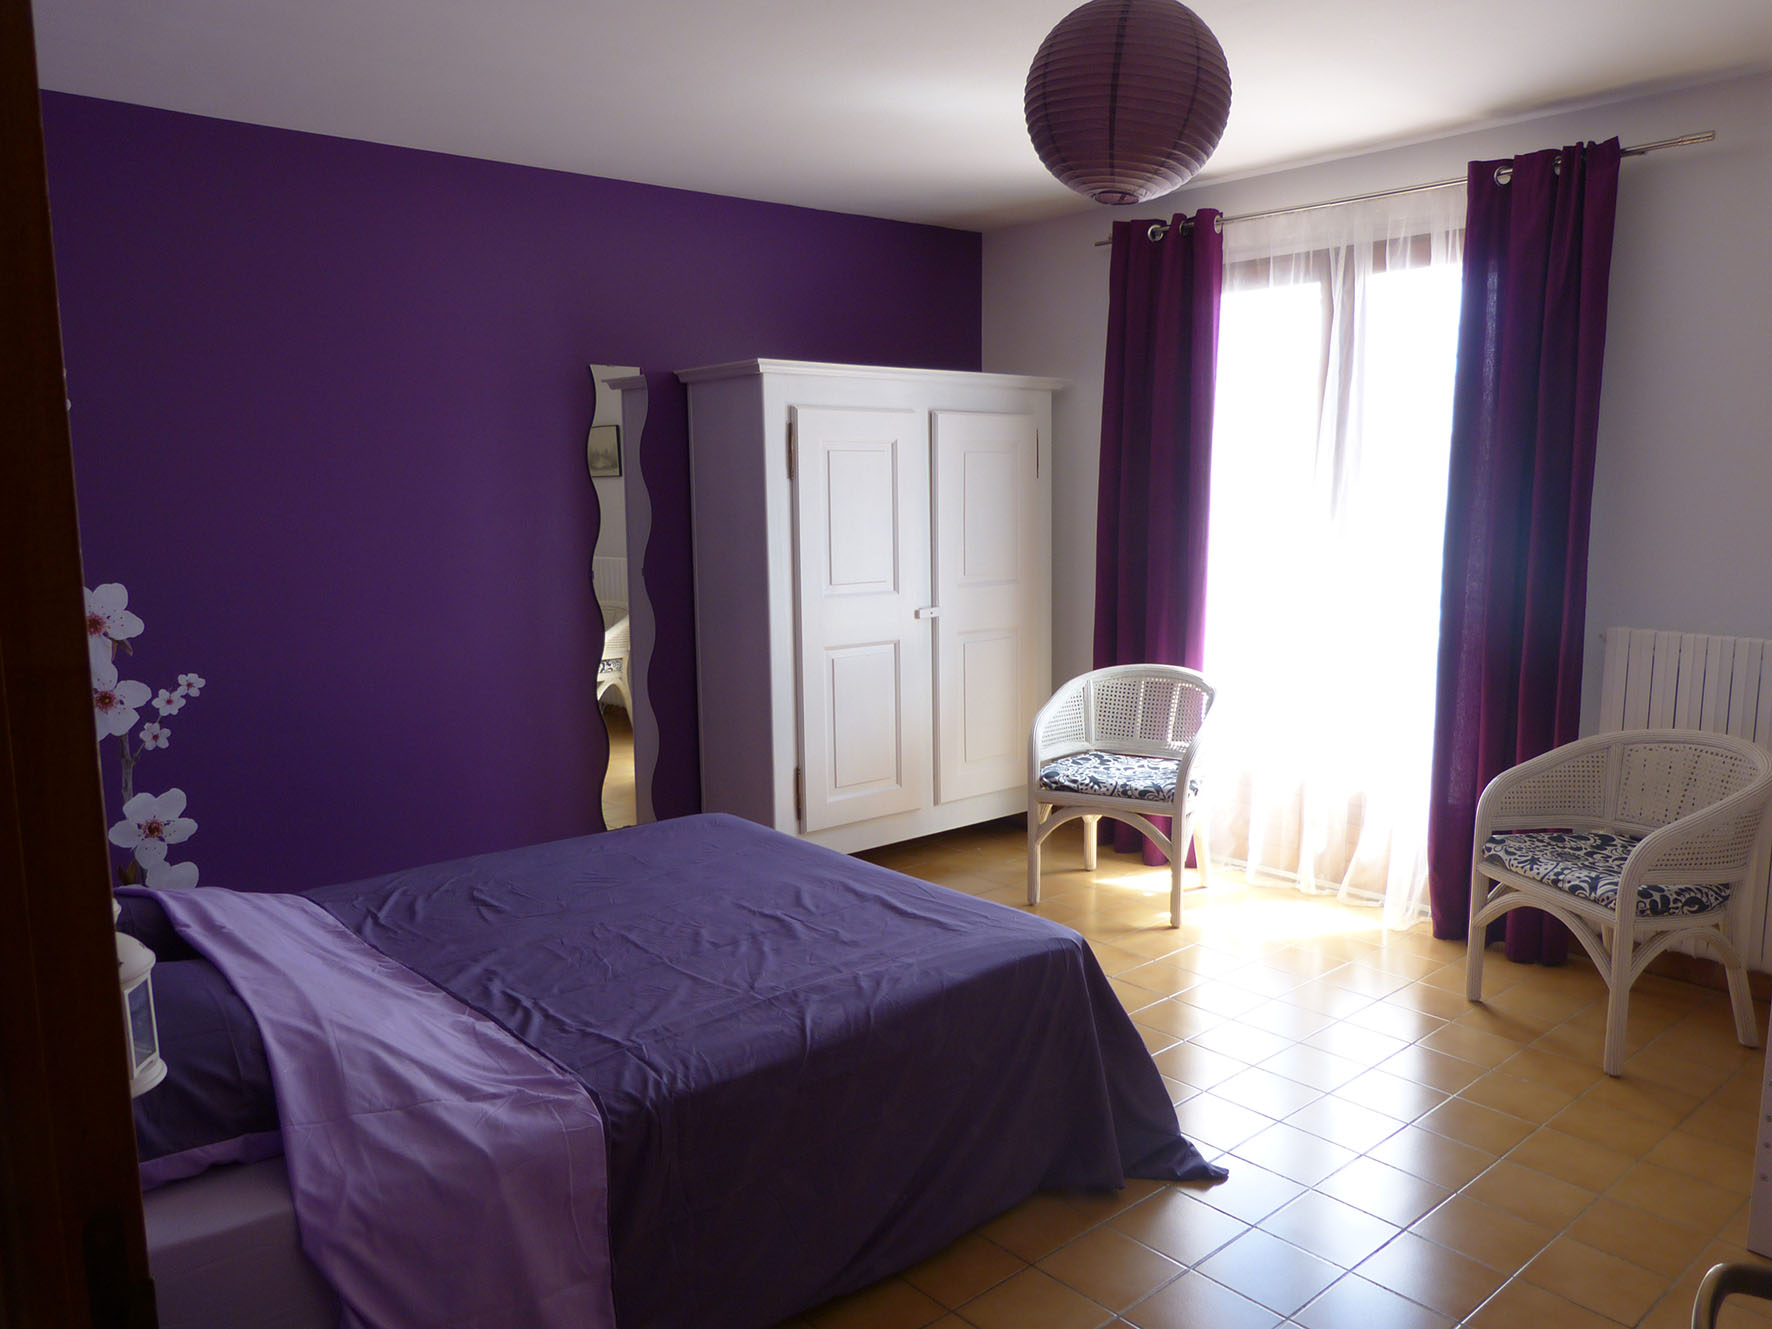 La chambre violette